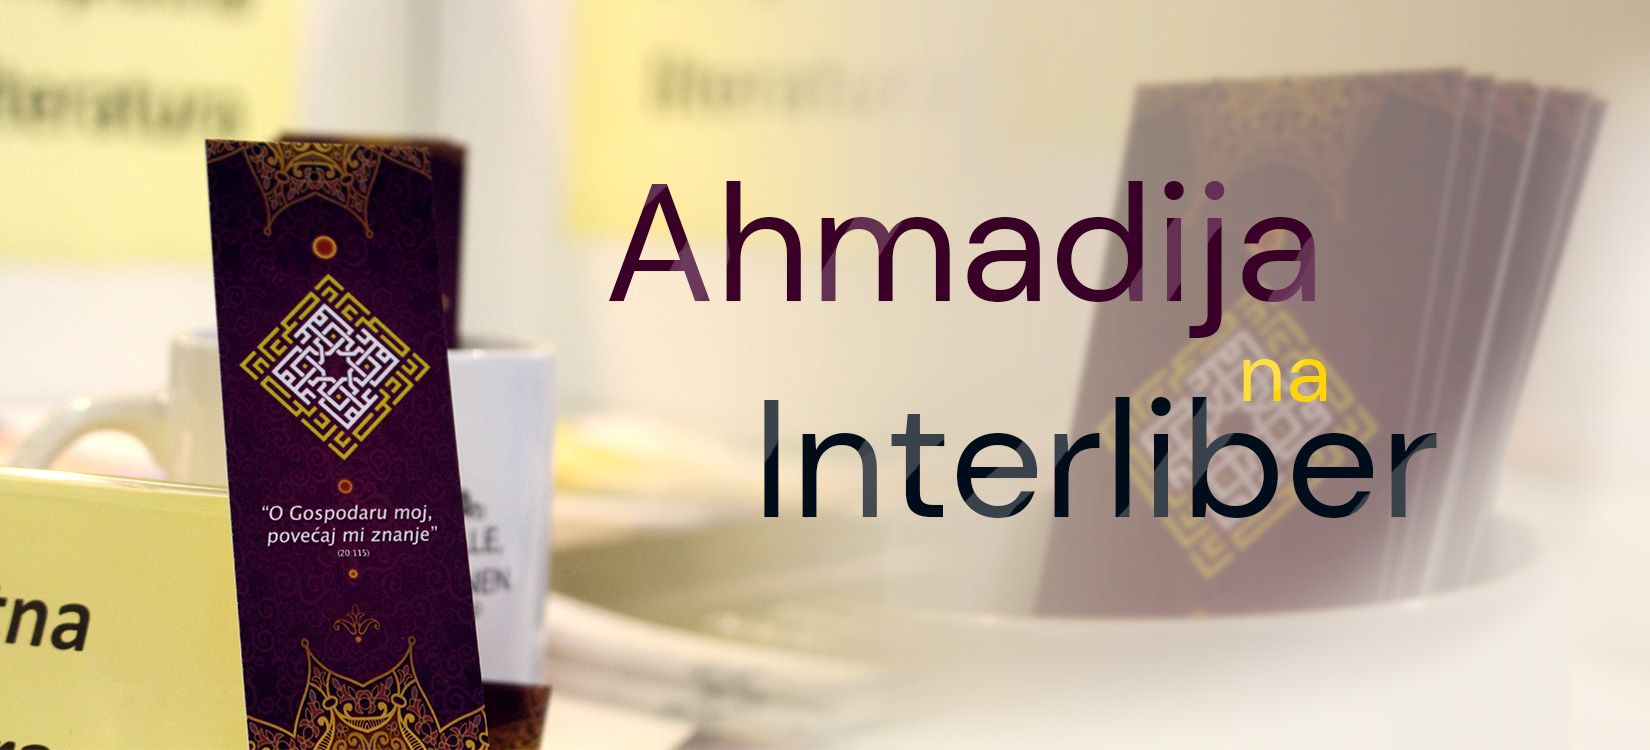 Interliber, Ahmadija